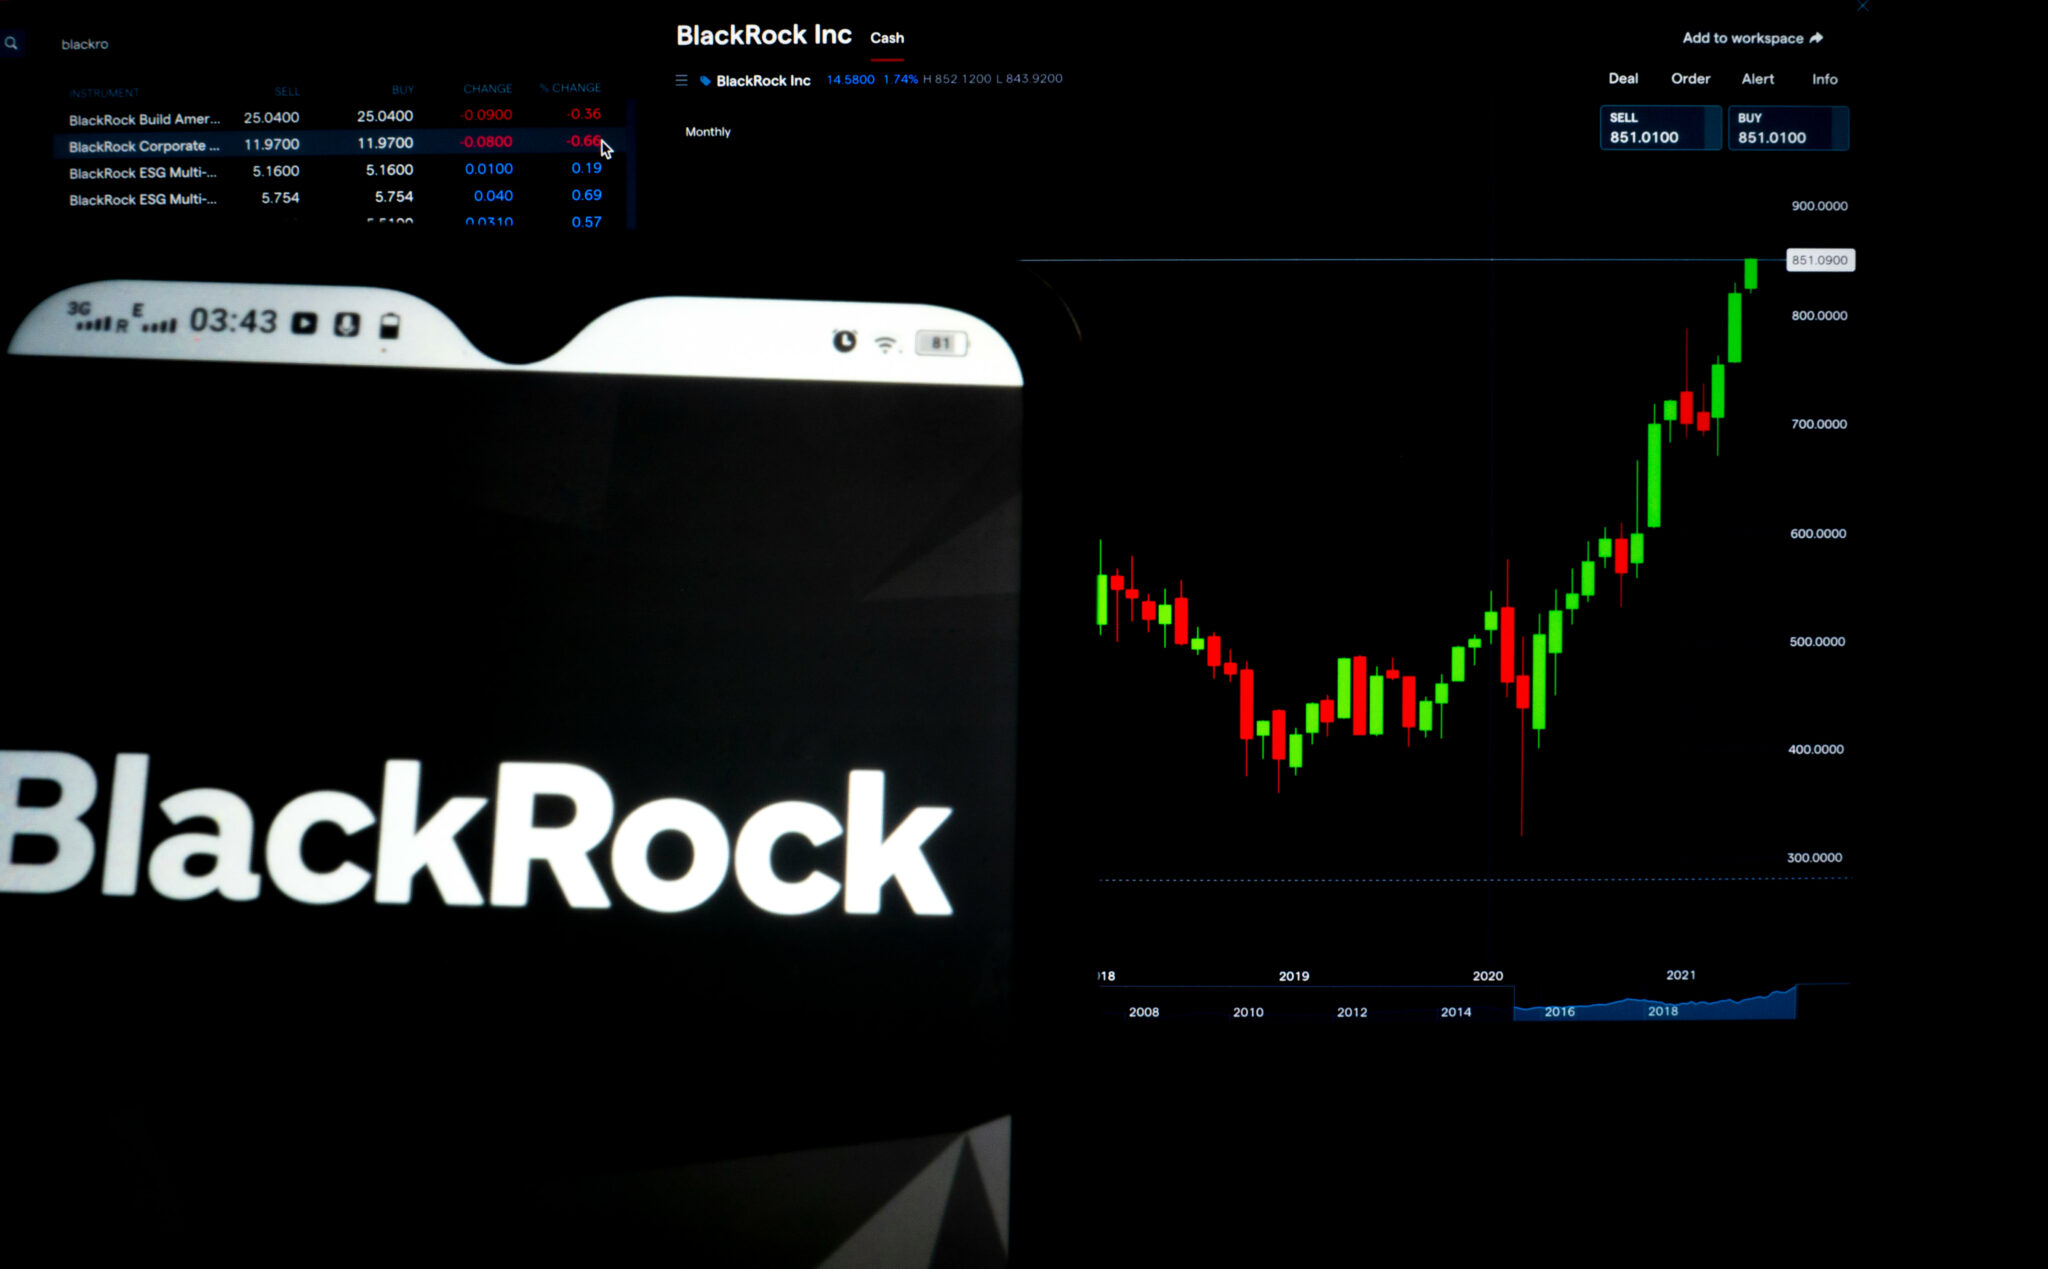 Bitcoin Jumps Near $25K Following BlackRock BTC Announcement